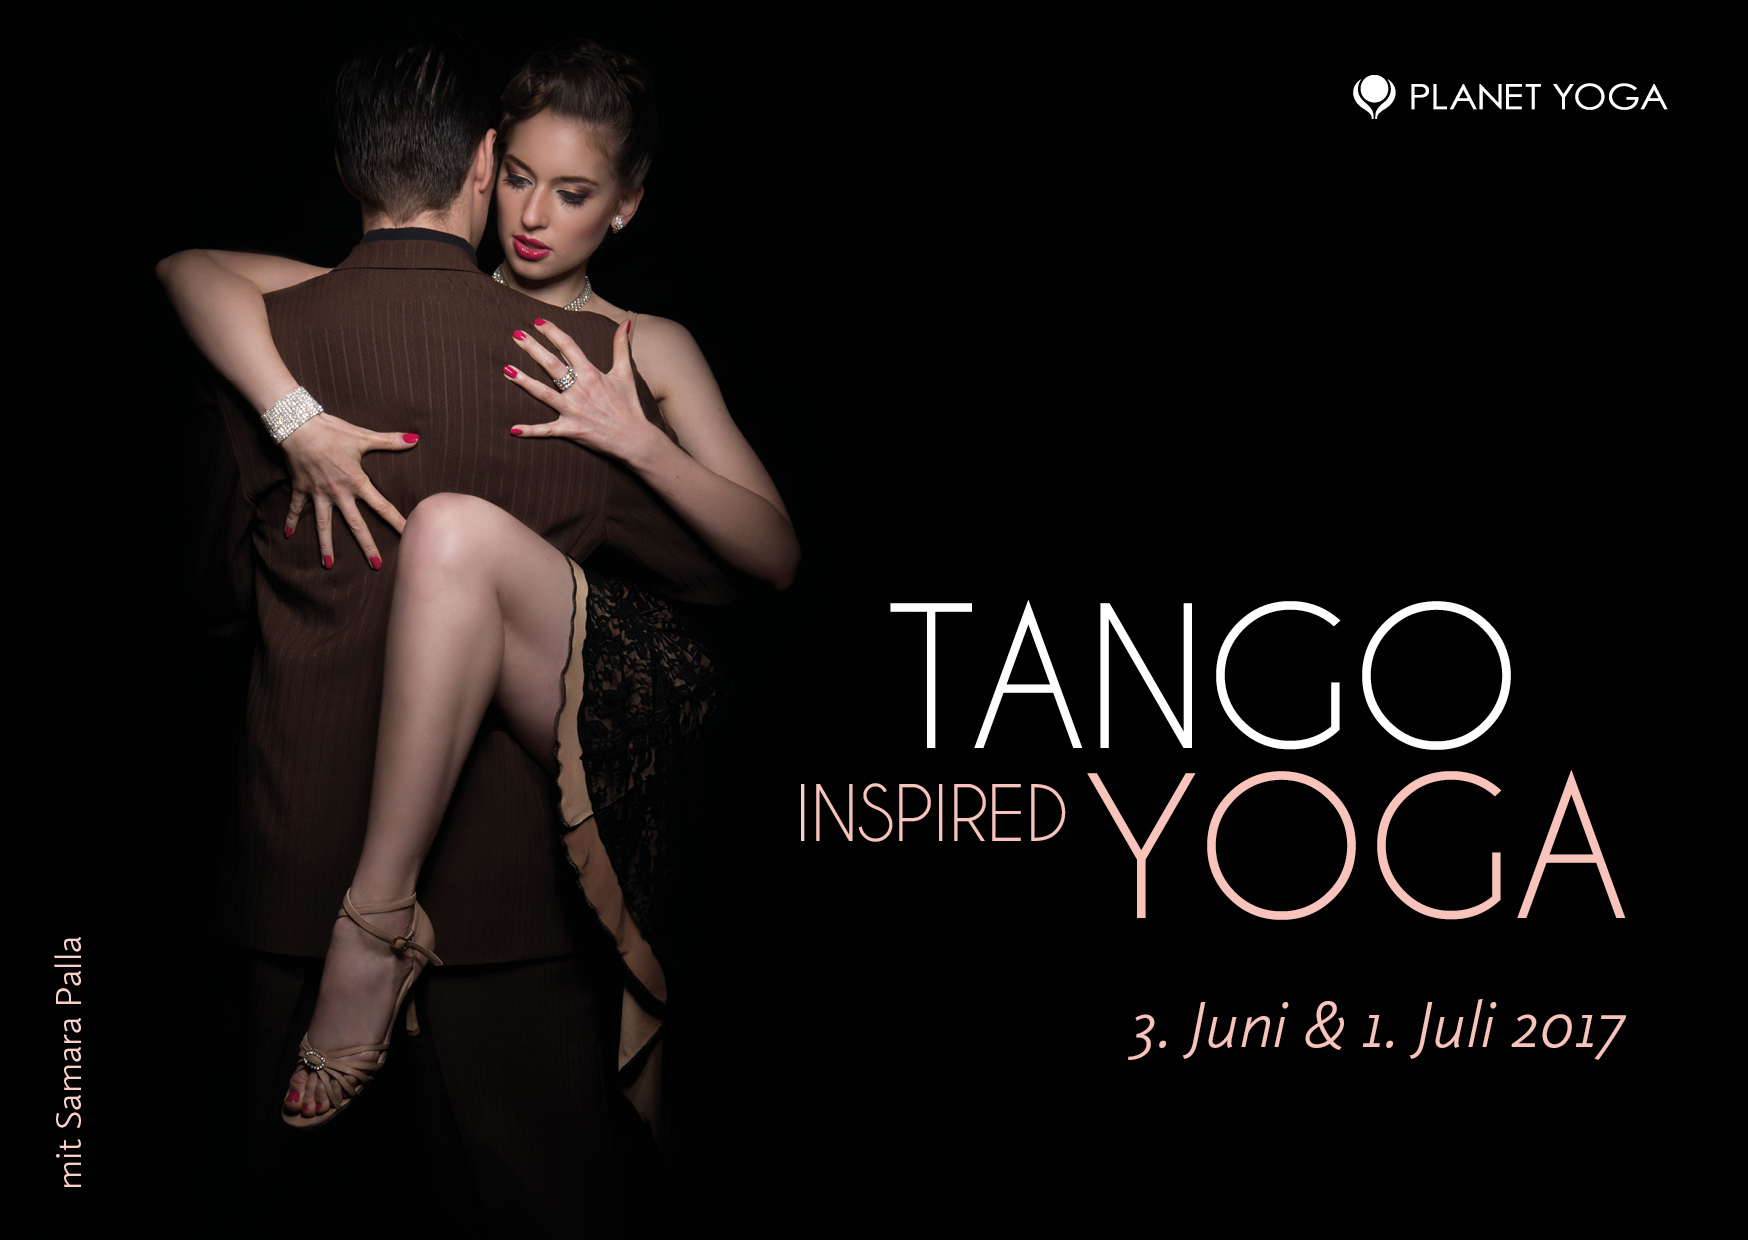 Tango inspired Yoga